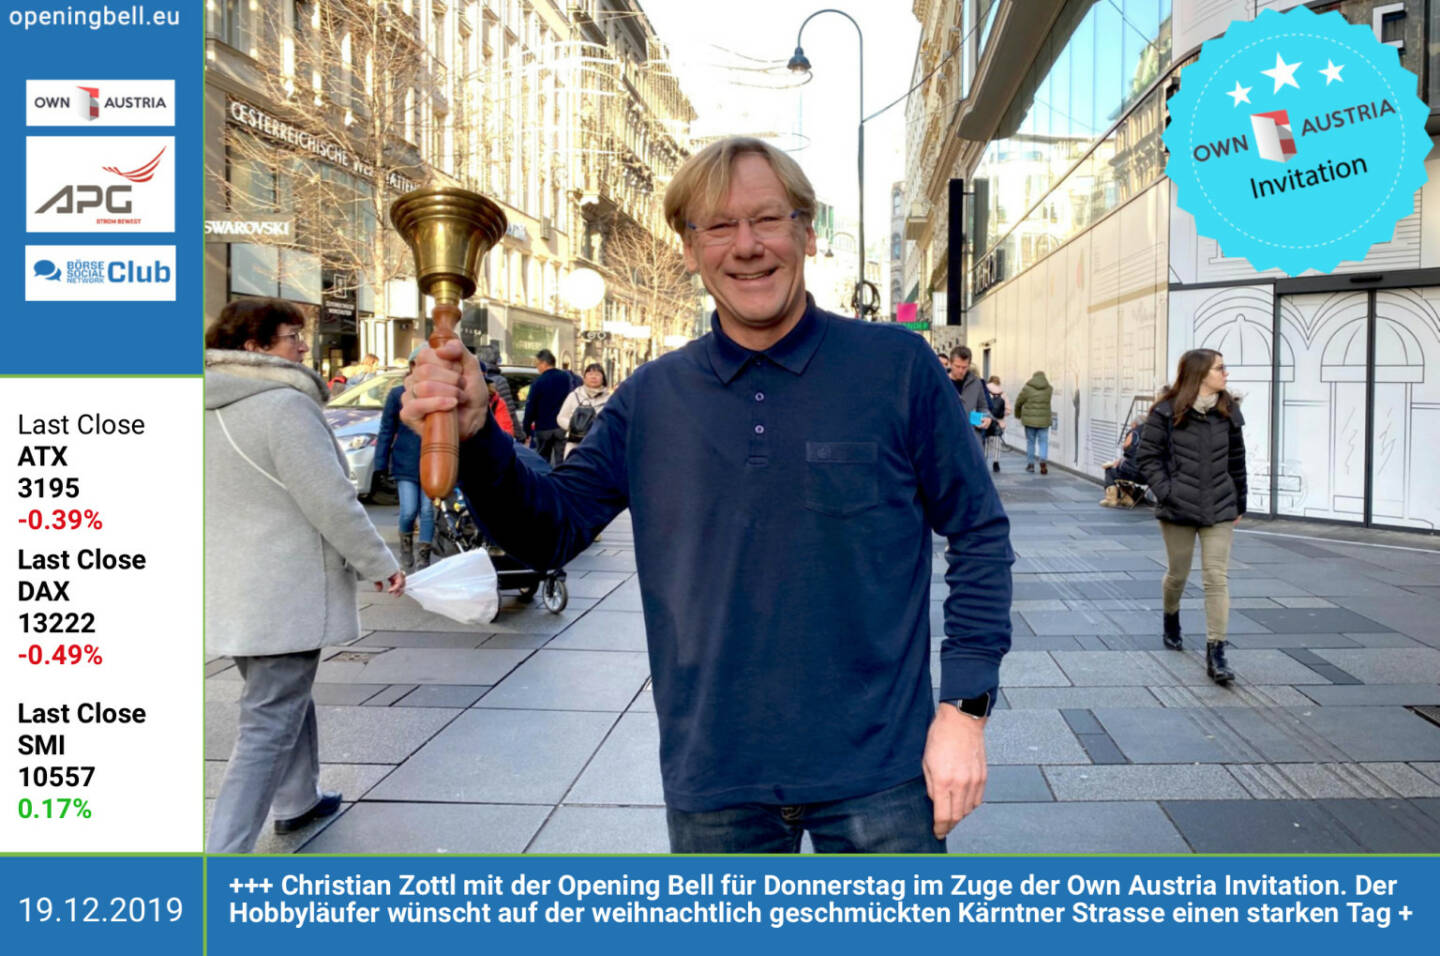 19.12.: Christian Zottl mit der Opening Bell für Donnerstag im Zuge der Own Austria Invitation. Der Hobbyläufer wünscht auf der weihnachtlich geschmückten Kärntner Strasse einen starken Business-Tag